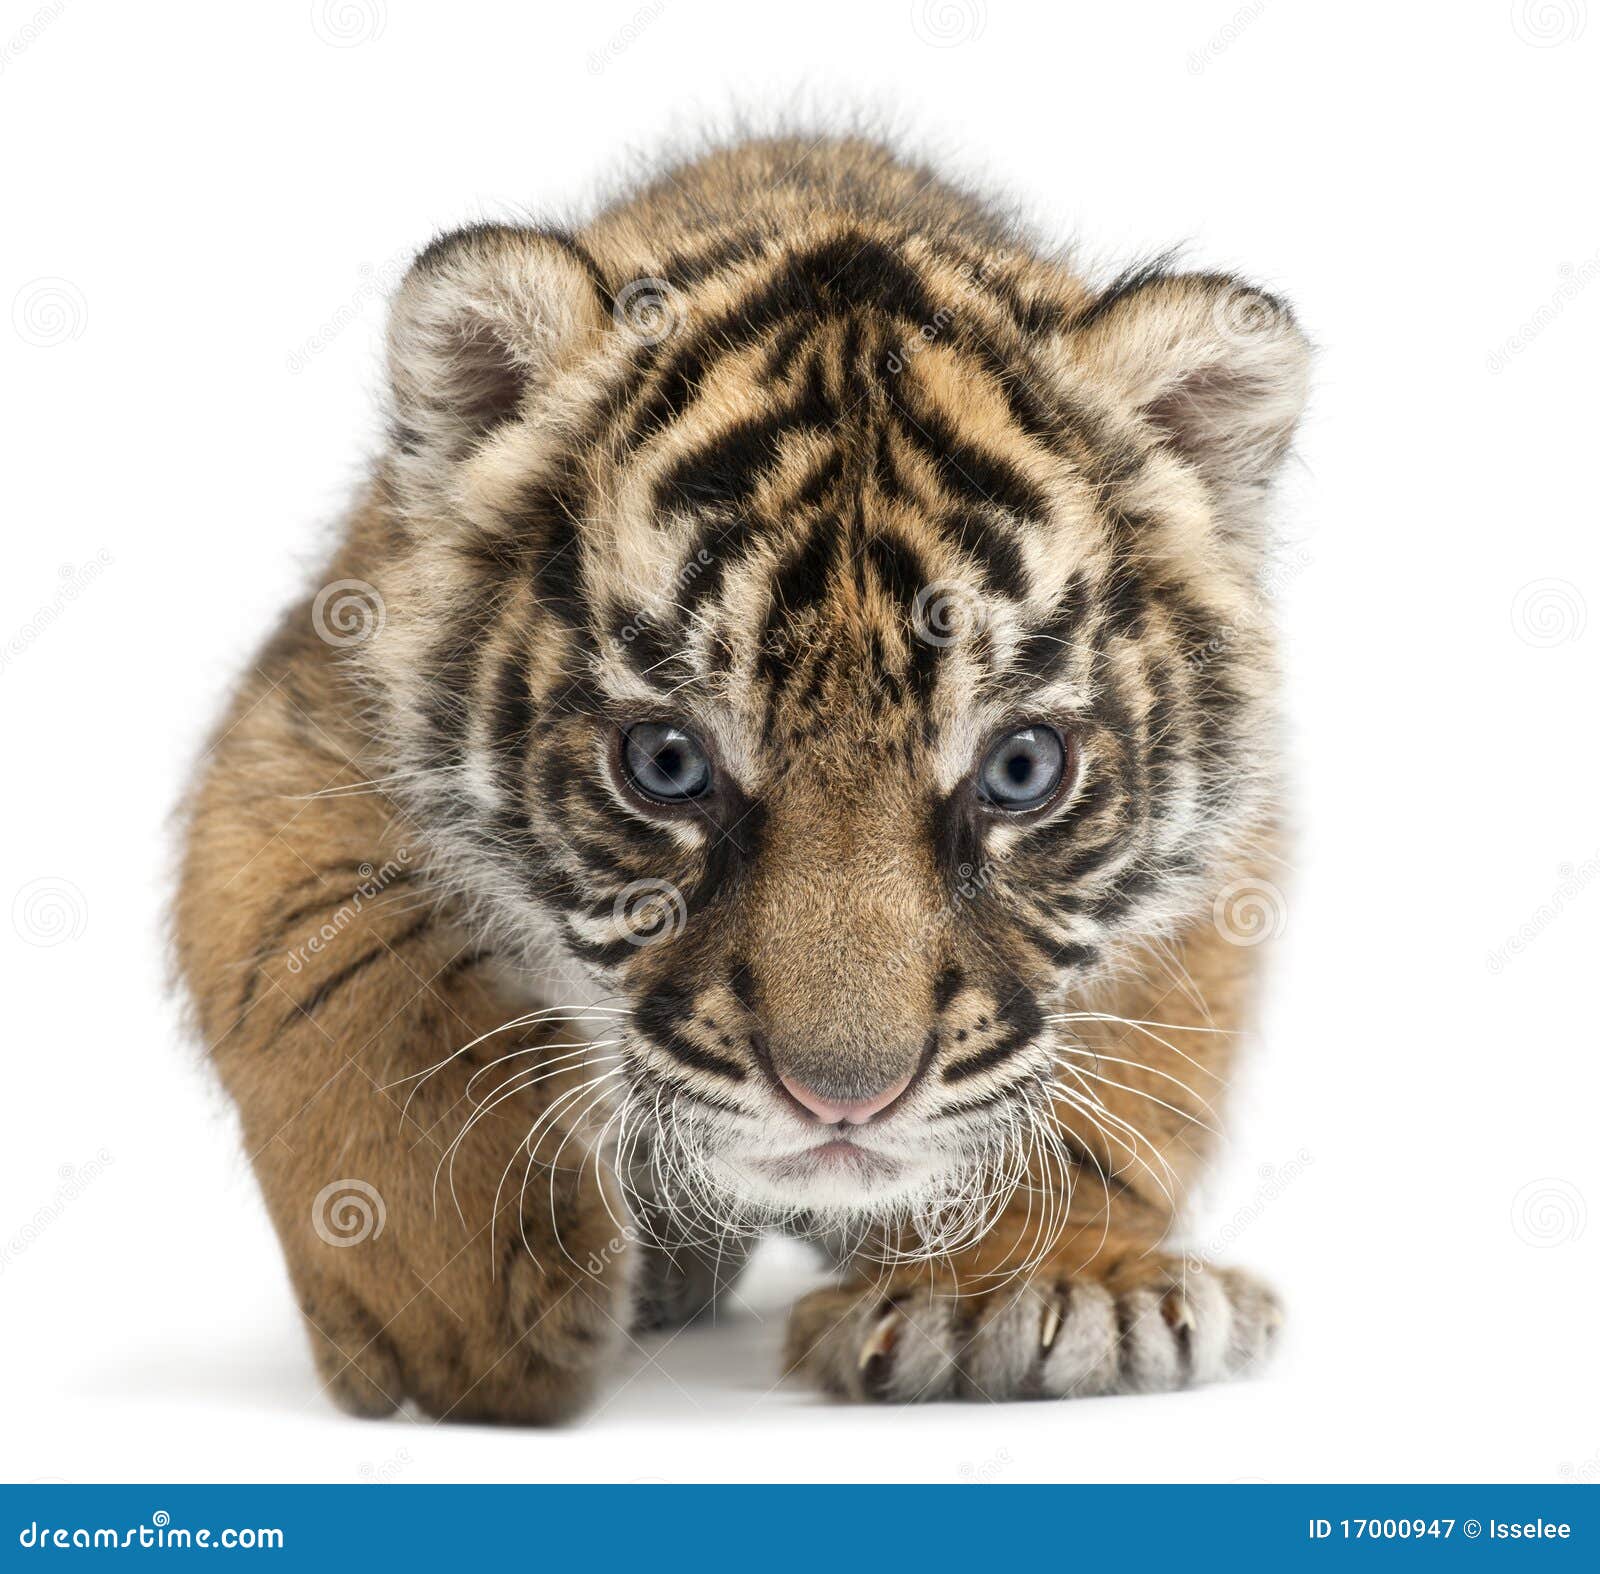 sumatran tiger cub, panthera tigris sumatrae